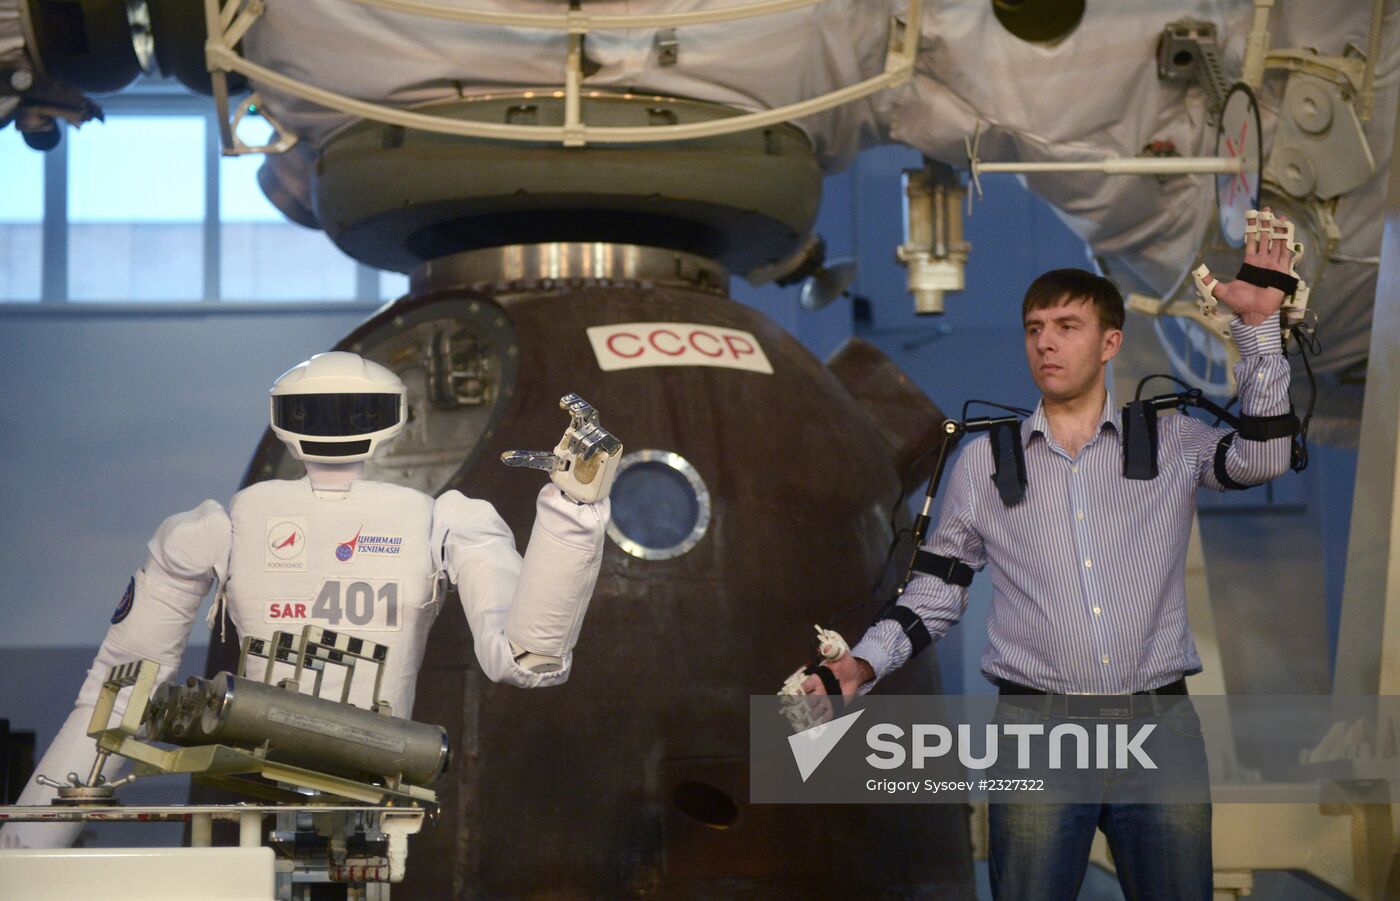 Russian cosmonaut robot displayed at Cosmonauts Training Center